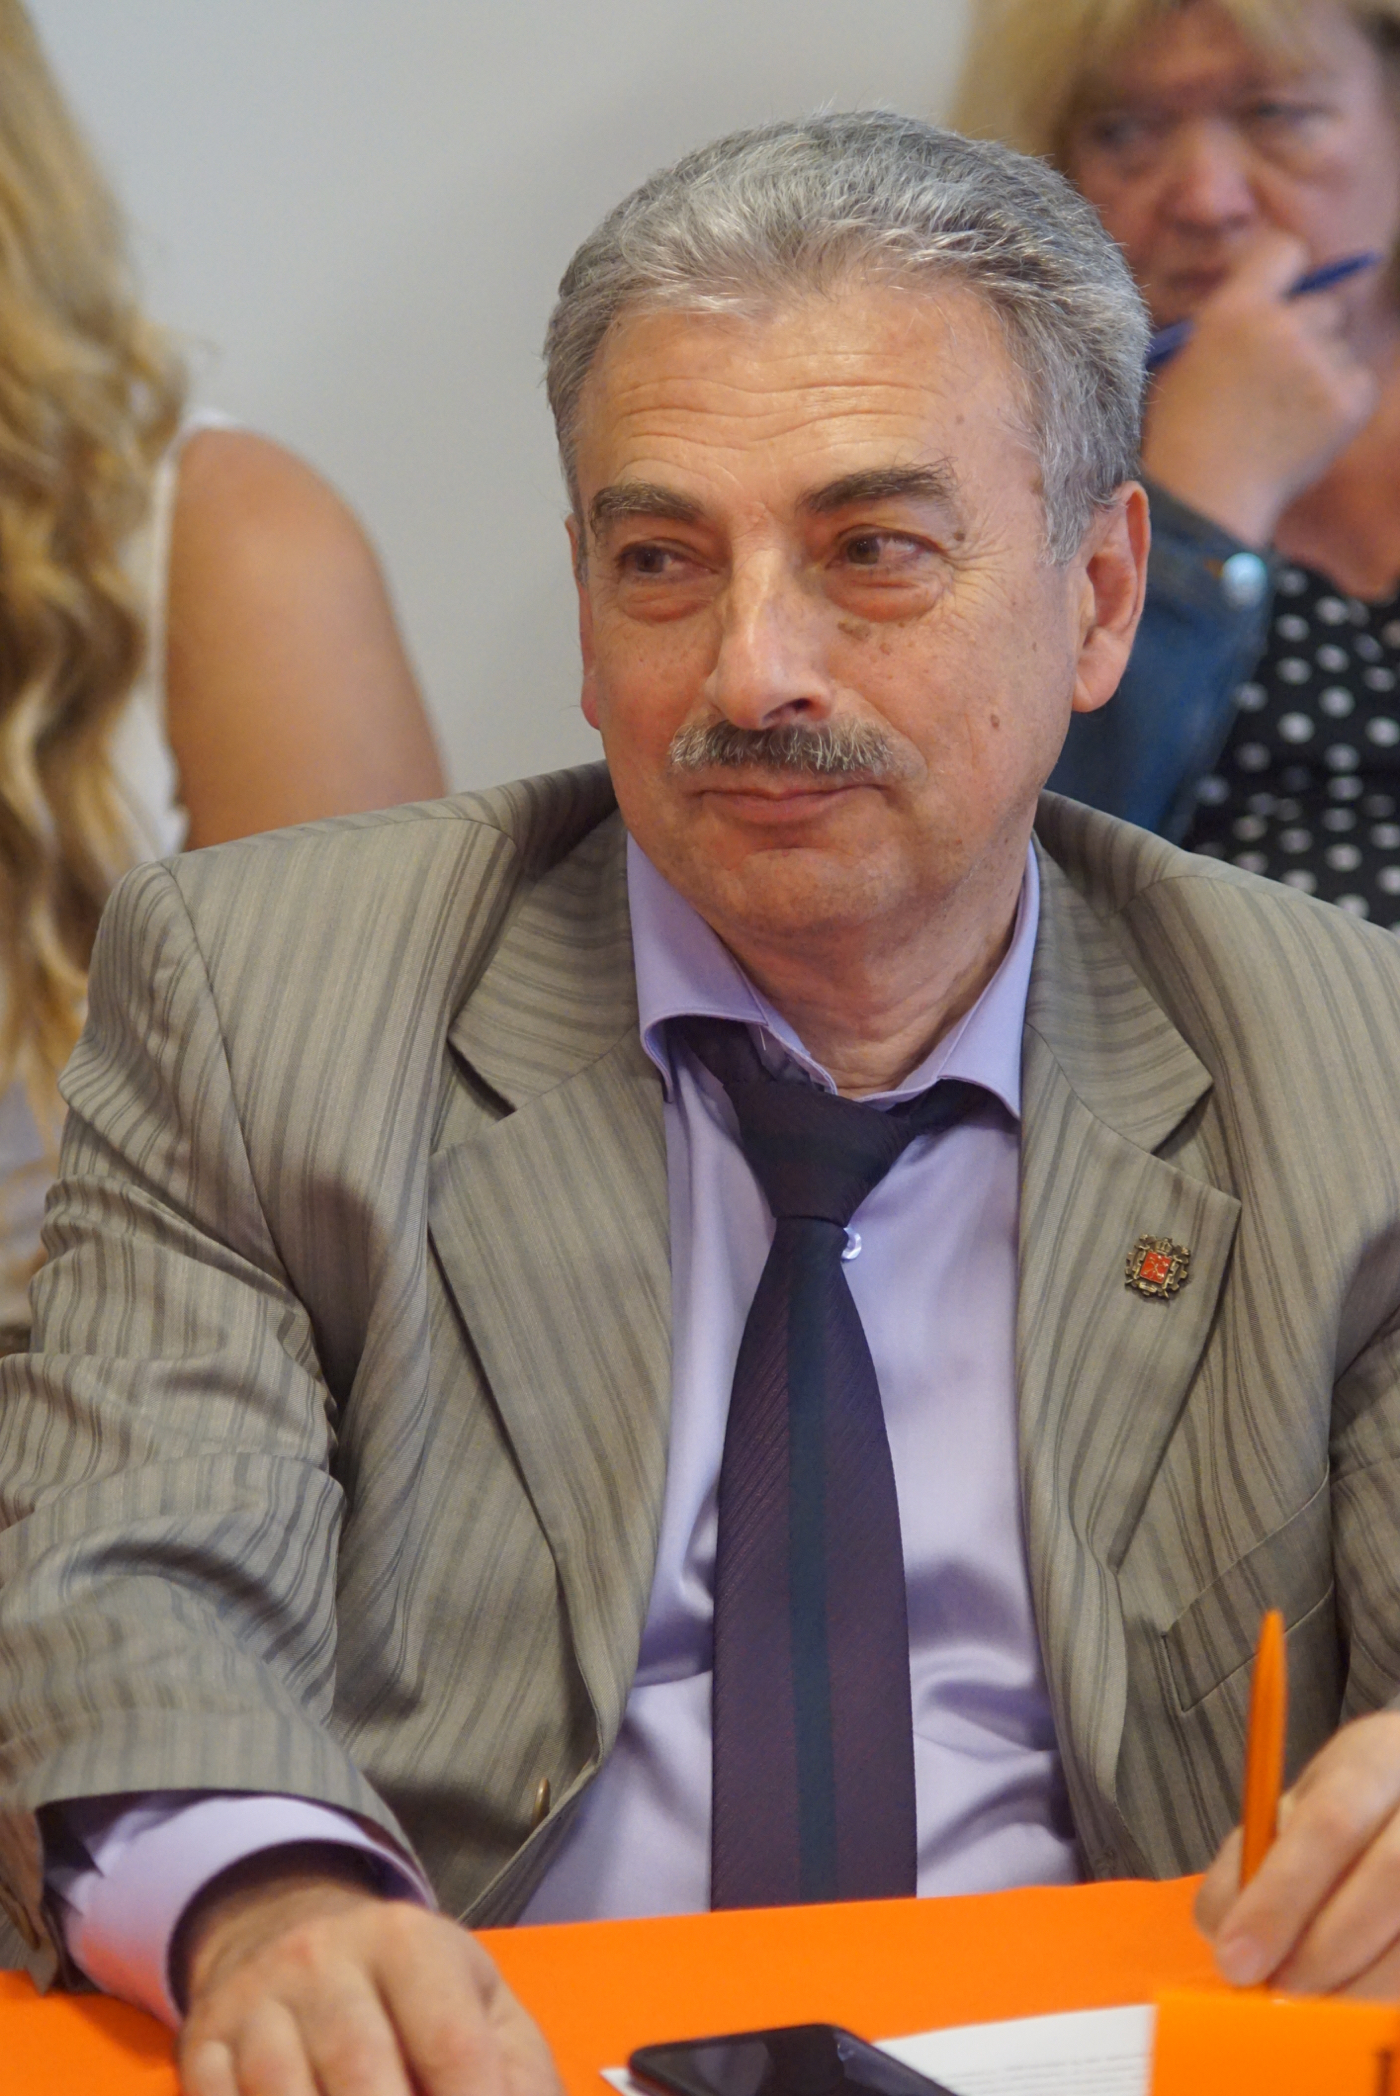 Шапиро Евгений Зиновьевич  — директор Фонда Развития Промышленности Санкт-Петербурга